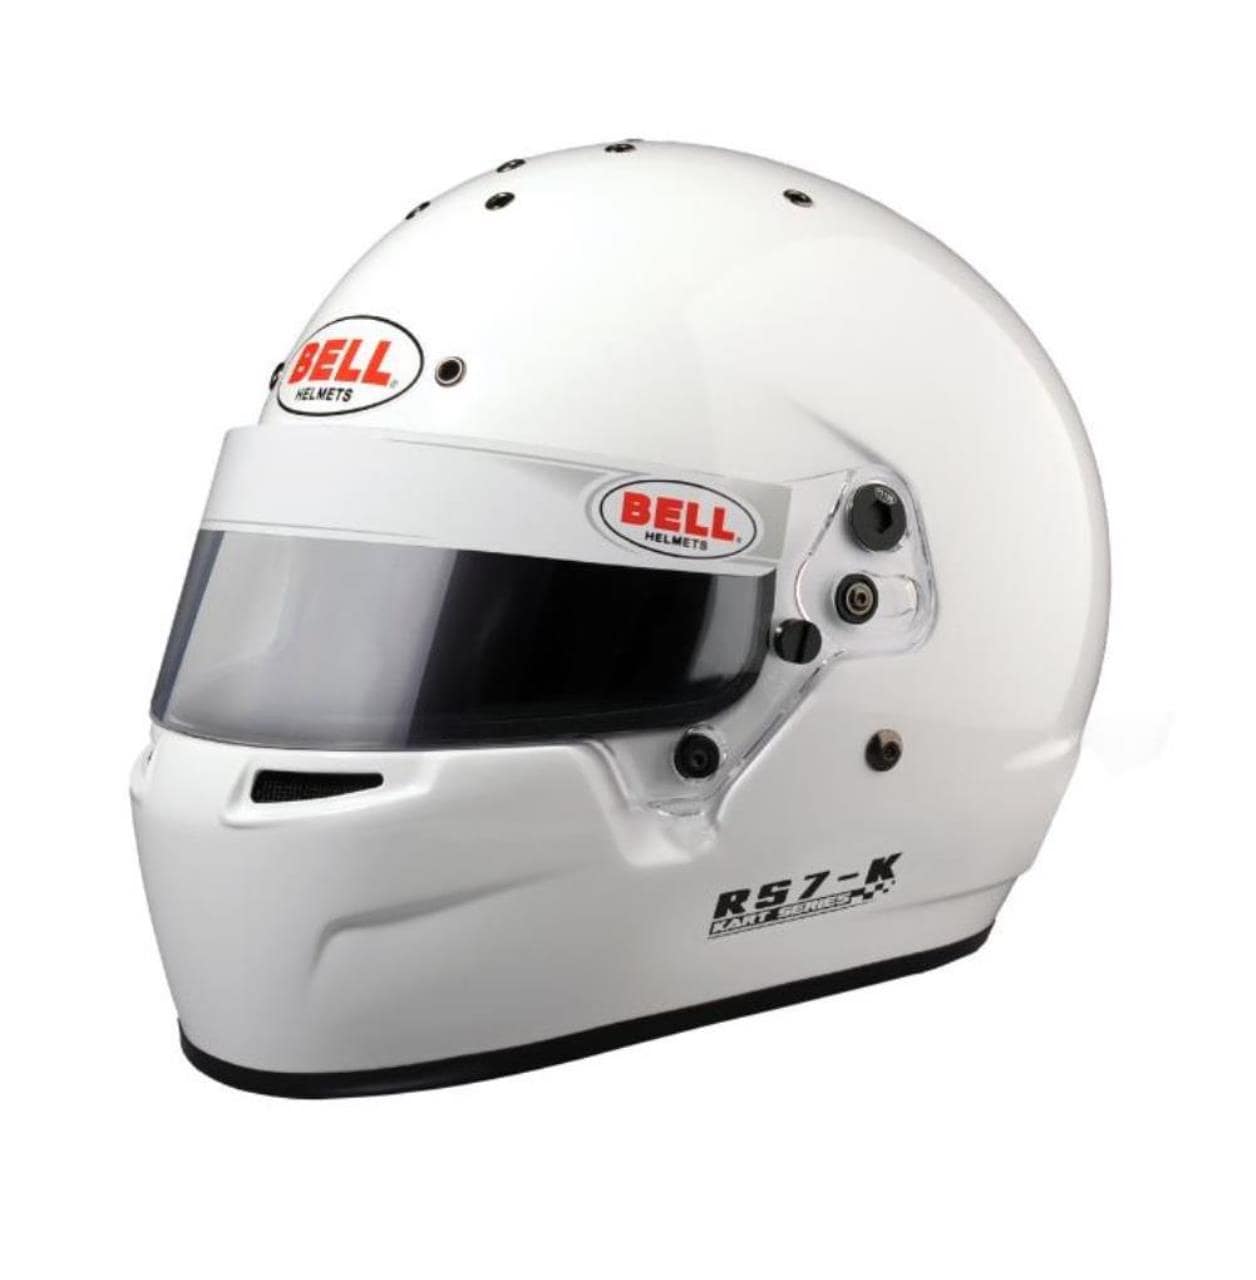 Karting helmet Bell RS7-K White